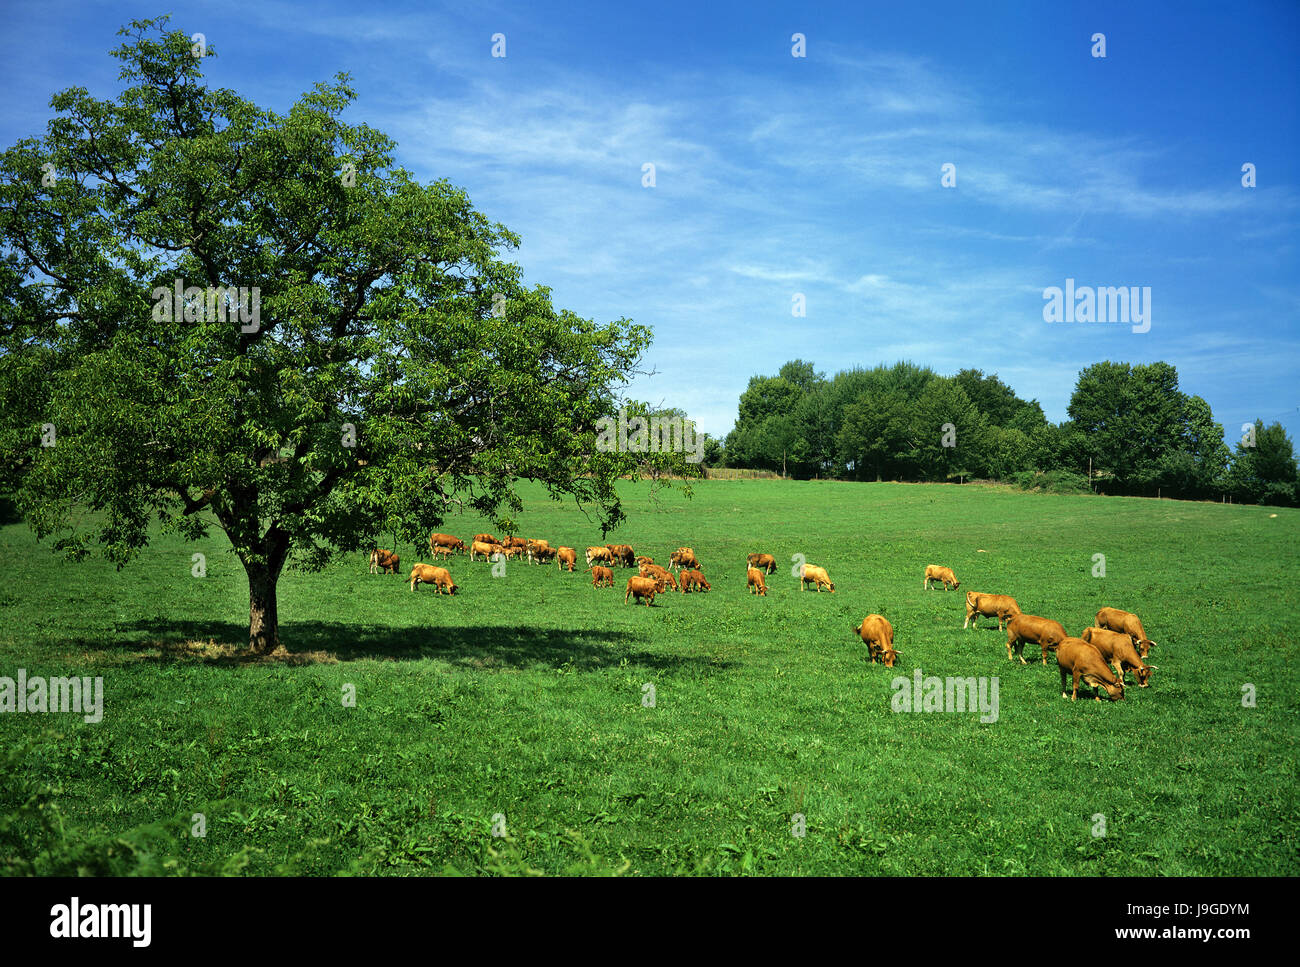 Domestic Cattle in Australia, Stock Photo